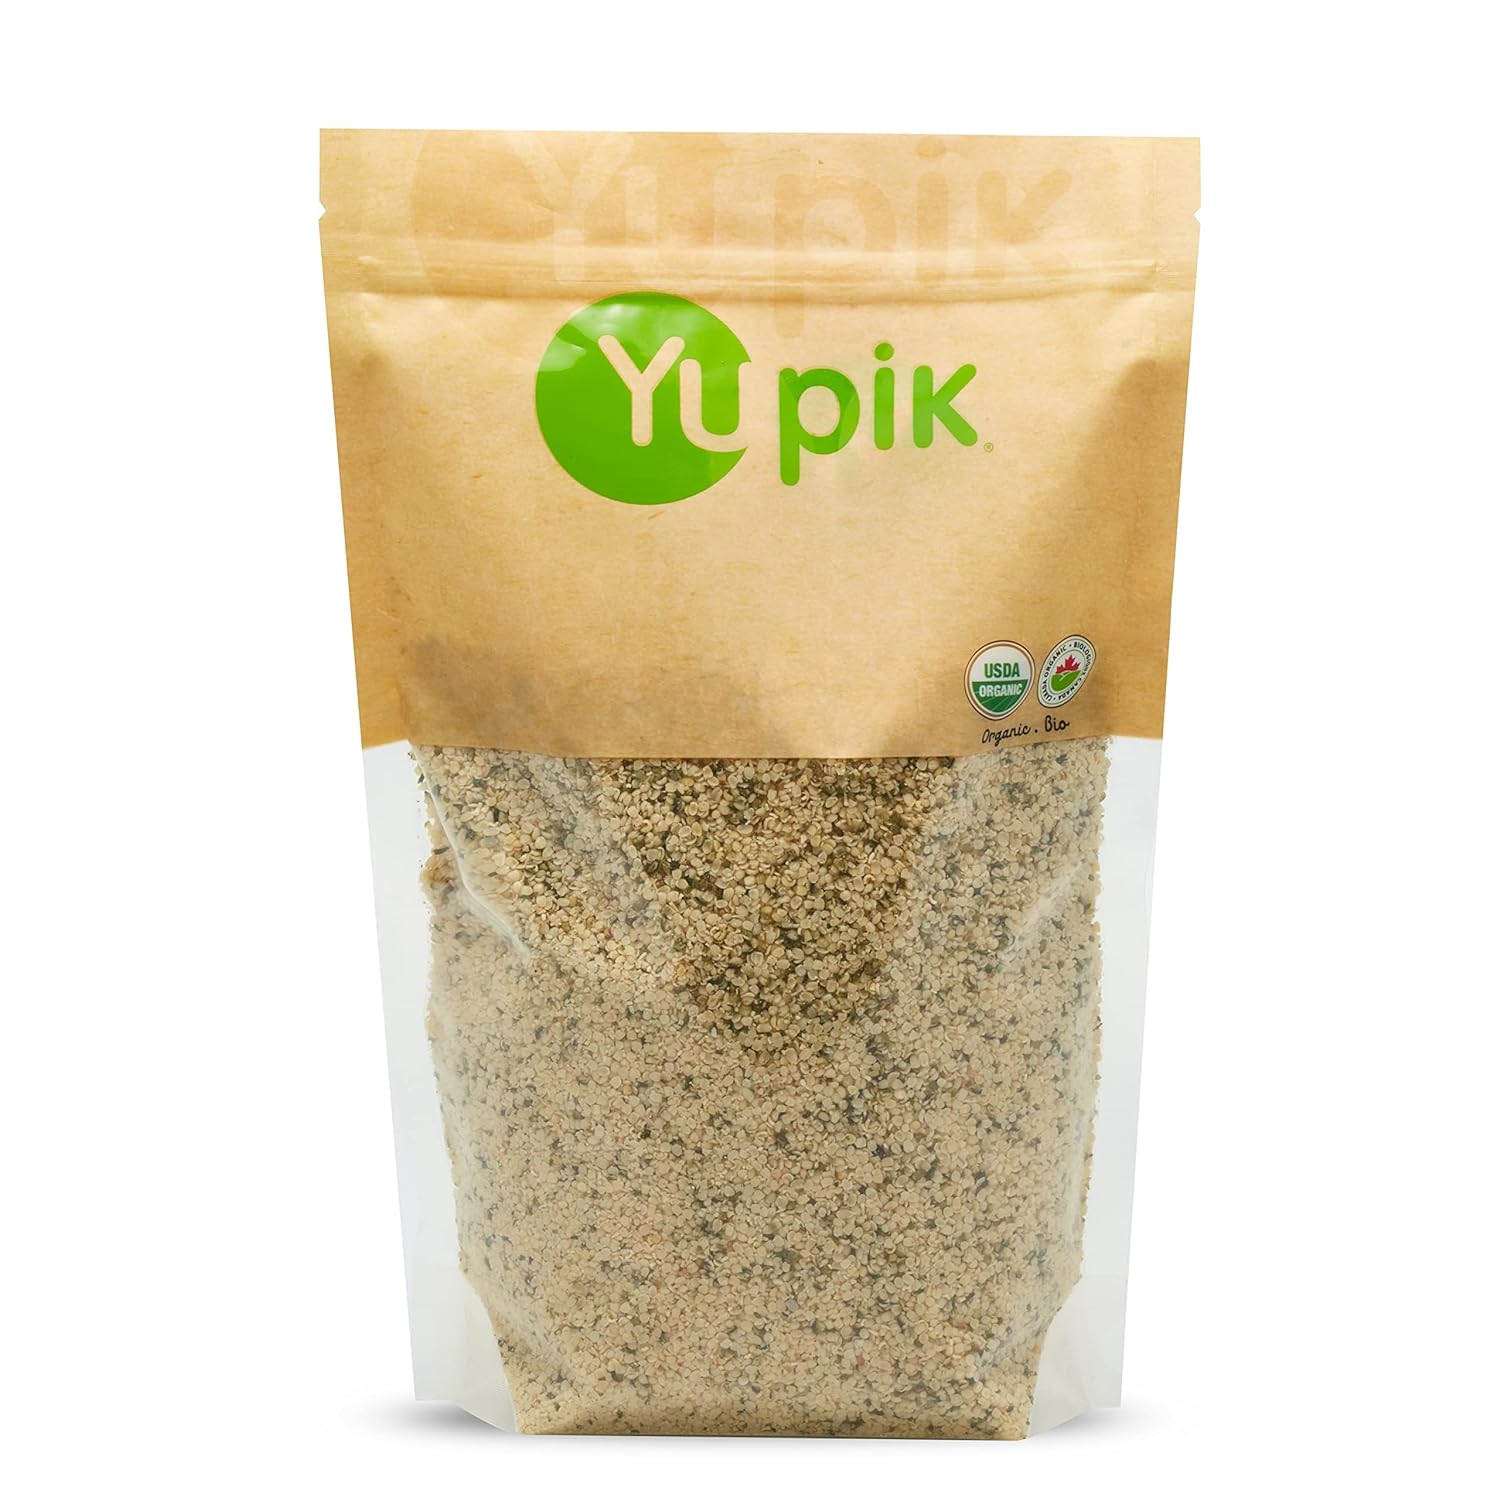 Yupik Organic Canadian Hulled Hemp Seeds, 1 lb - 16oz, Vegan, GMO-Free, Vegetarian, Gluten-Free Hemp Hearts, Brown, Pack of 1